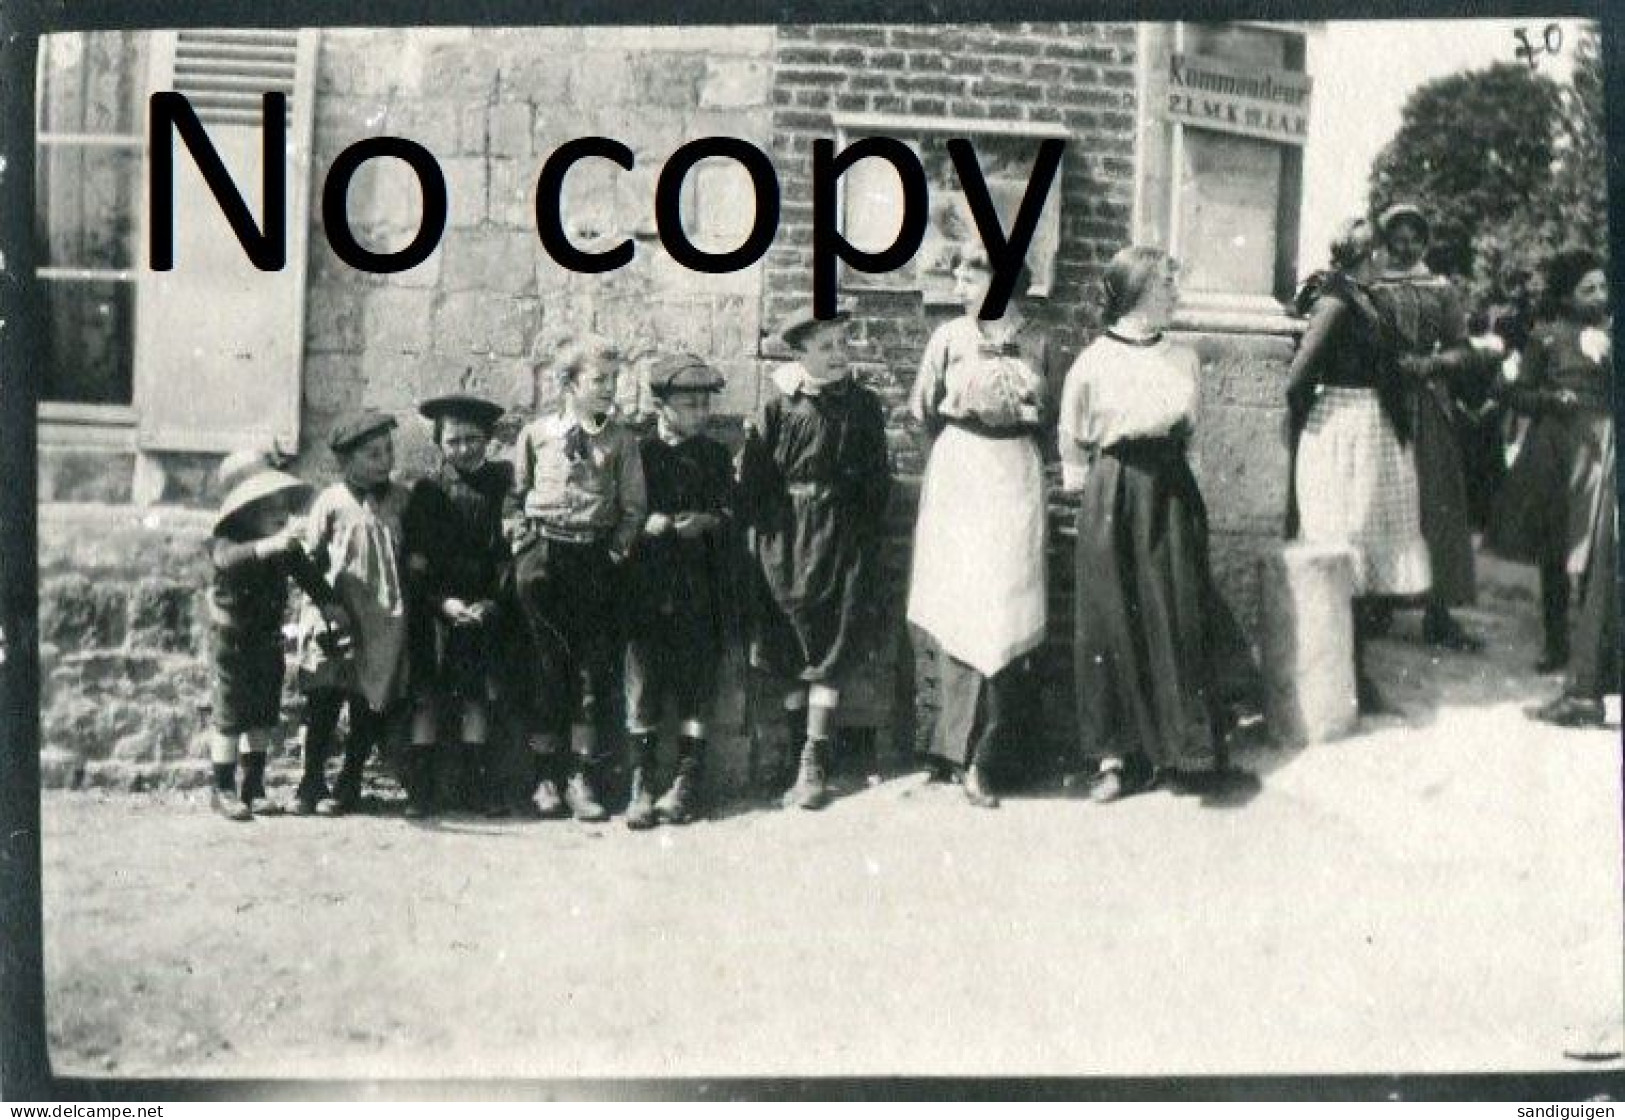 PHOTO ALLEMANDE - CIVILS FEMME ET ENFANT A FALVY PRES DE CROIX MOLIGNEAUX - HAM SOMME - GUERRE 1914 1918 - Guerre, Militaire